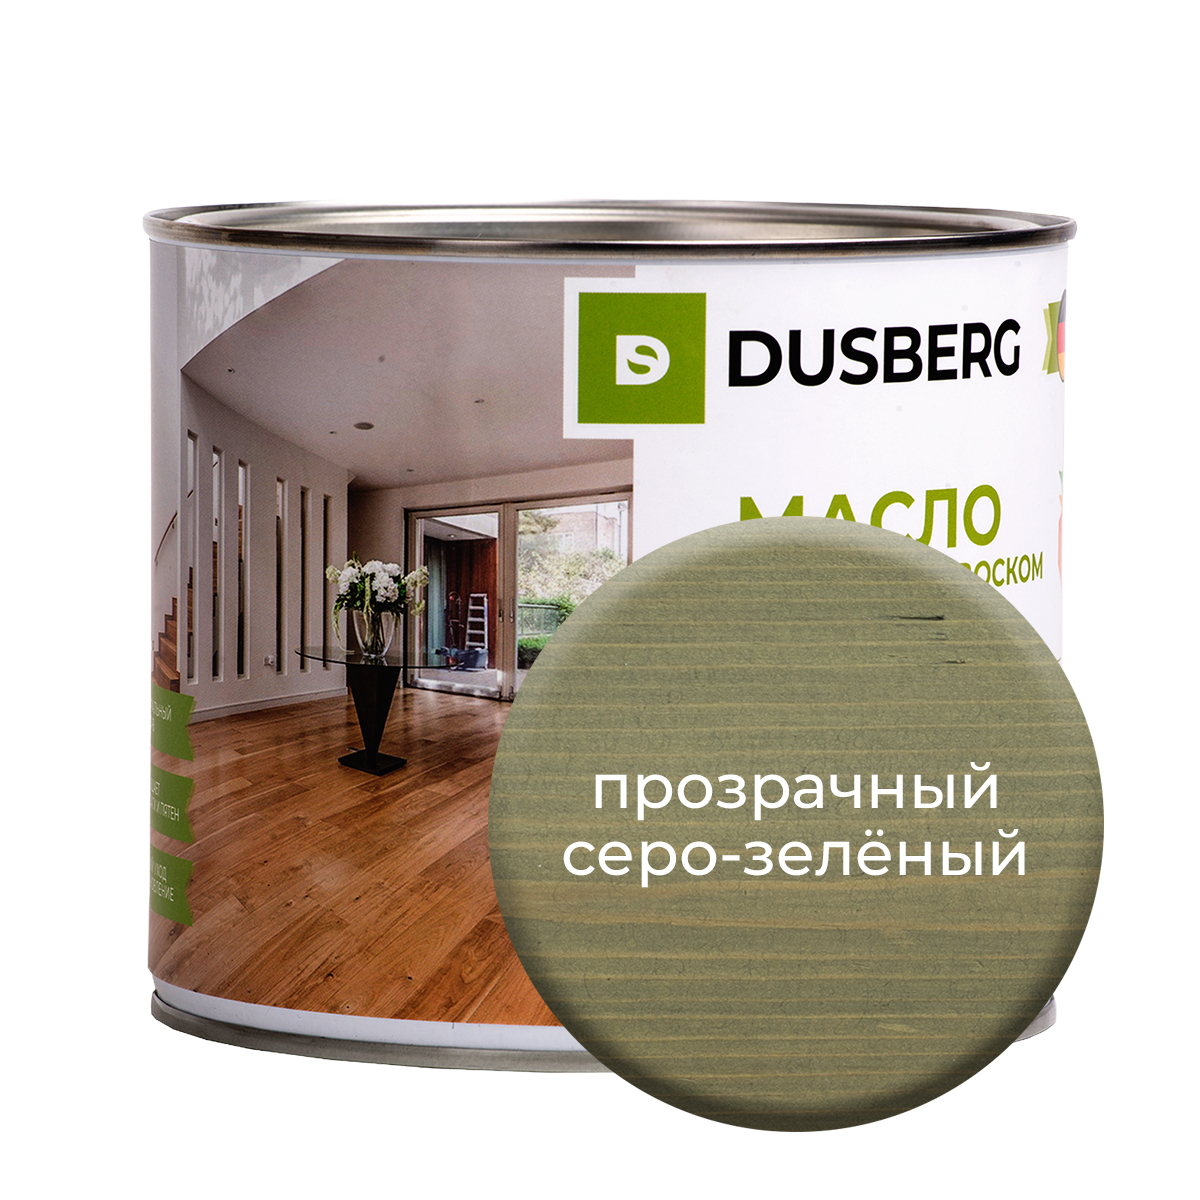 Масло Dusberg с твердым воском на бесцветной основе, 2 л Прозрачный серо-зеленый масло dusberg с твердым воском на бесцветной основе 750 мл темный серо зеленый